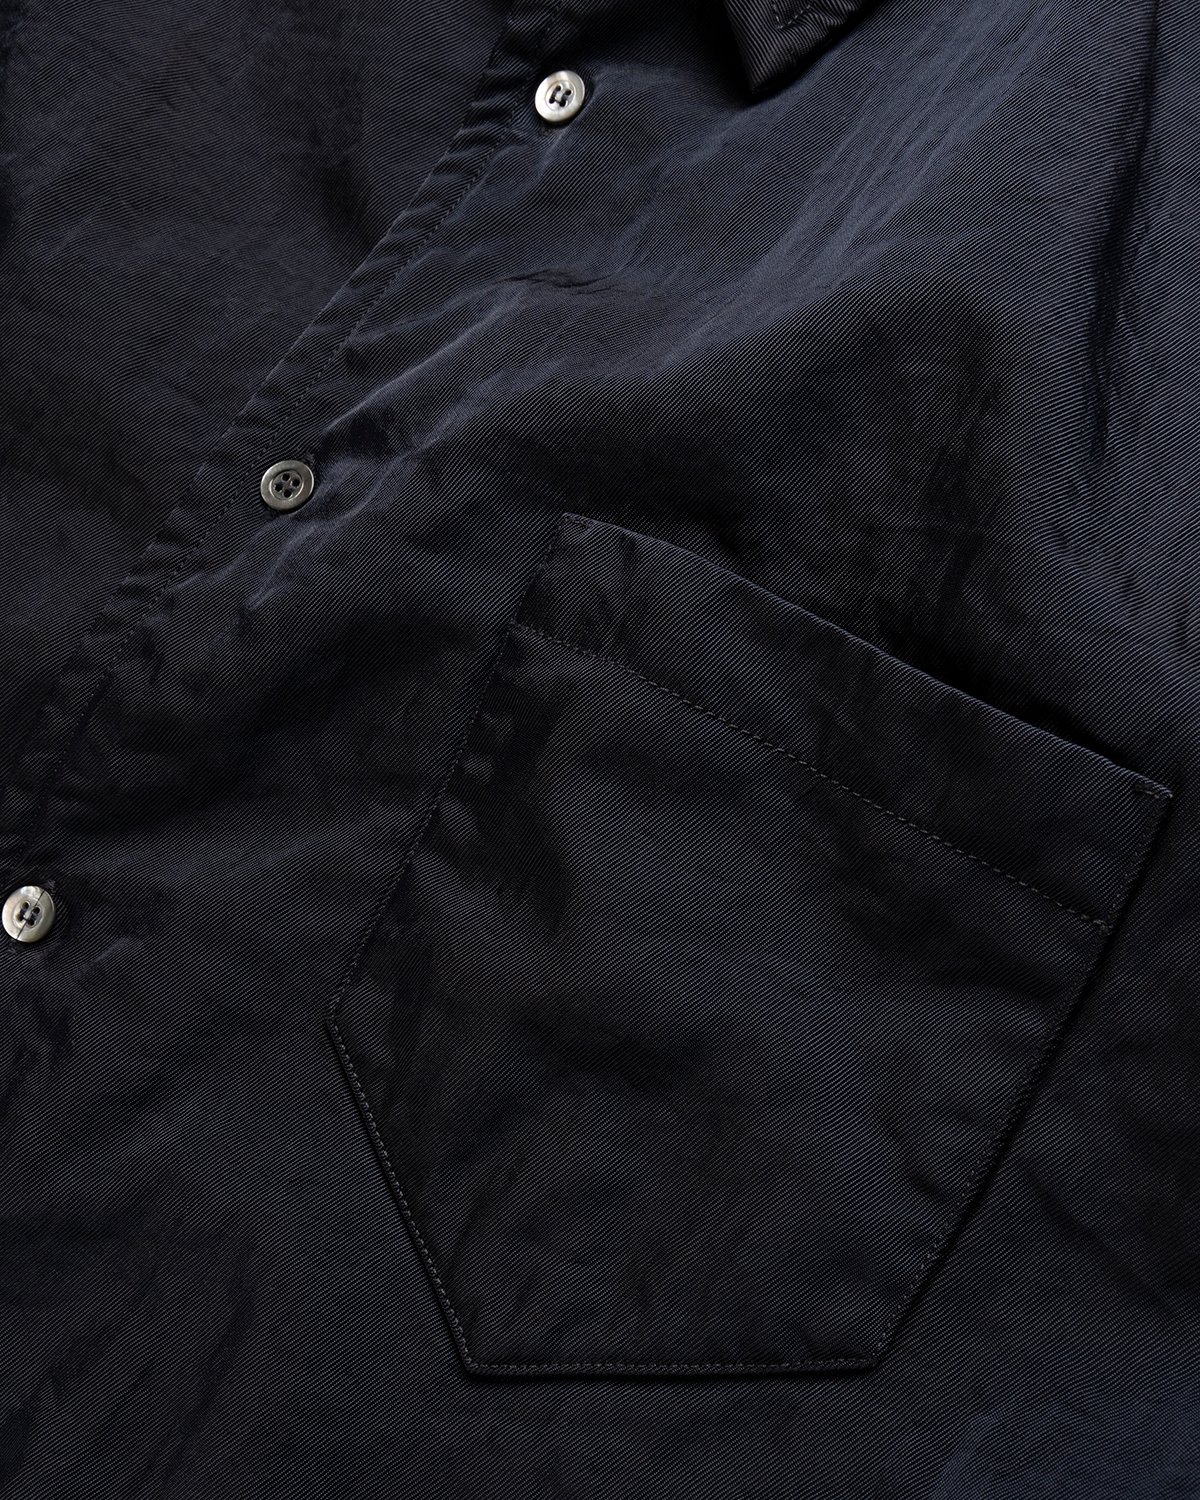 Maison Margiela - Oversized Nylon Jacket Navy - Clothing - Black - Image 6